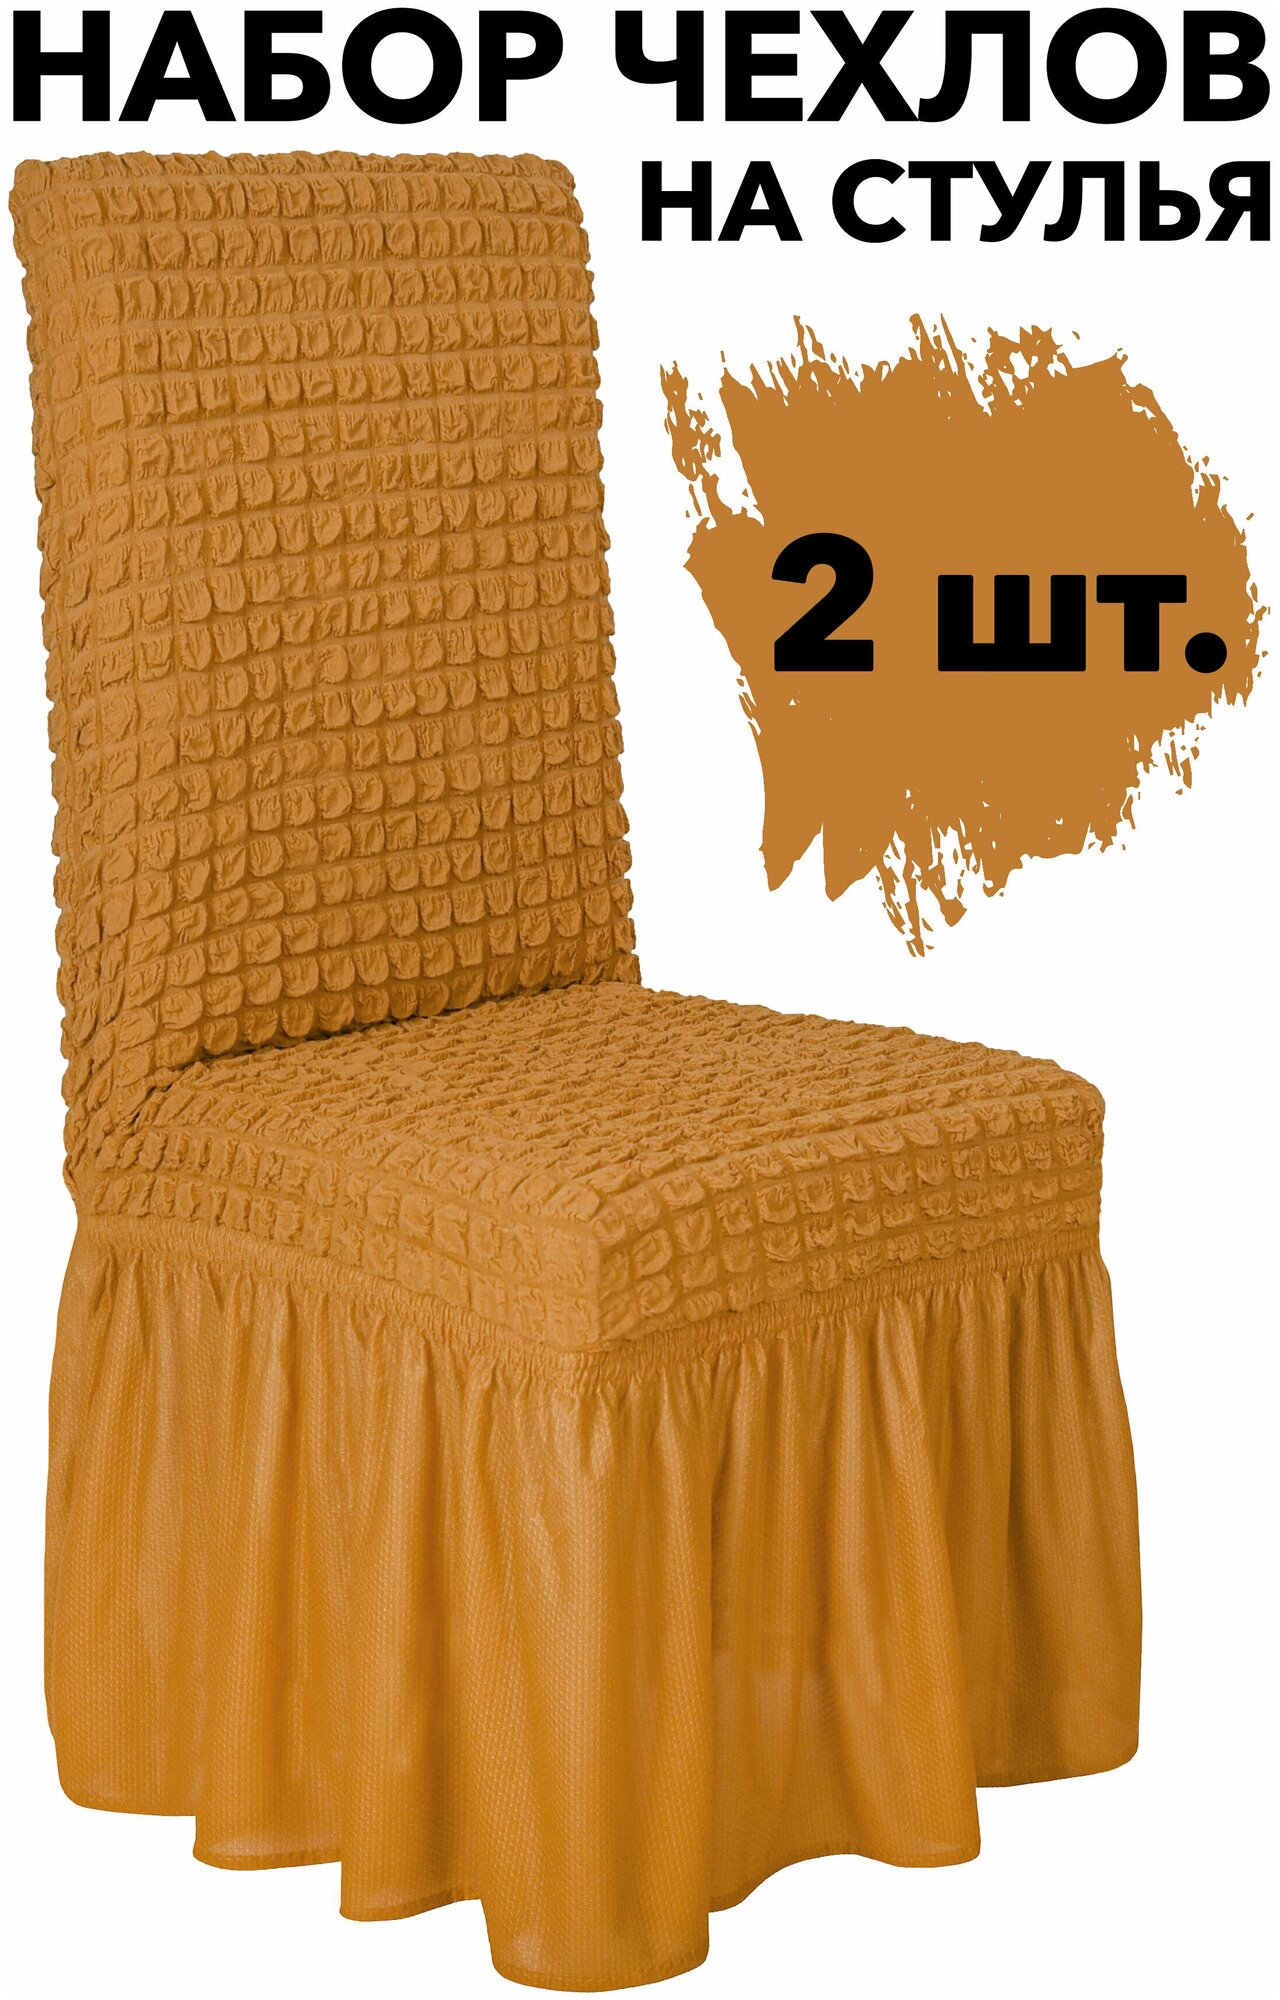 Чехлы для стульев со спинкой 2 шт набор универсальный с юбкой на кухню, цвет Горчичный